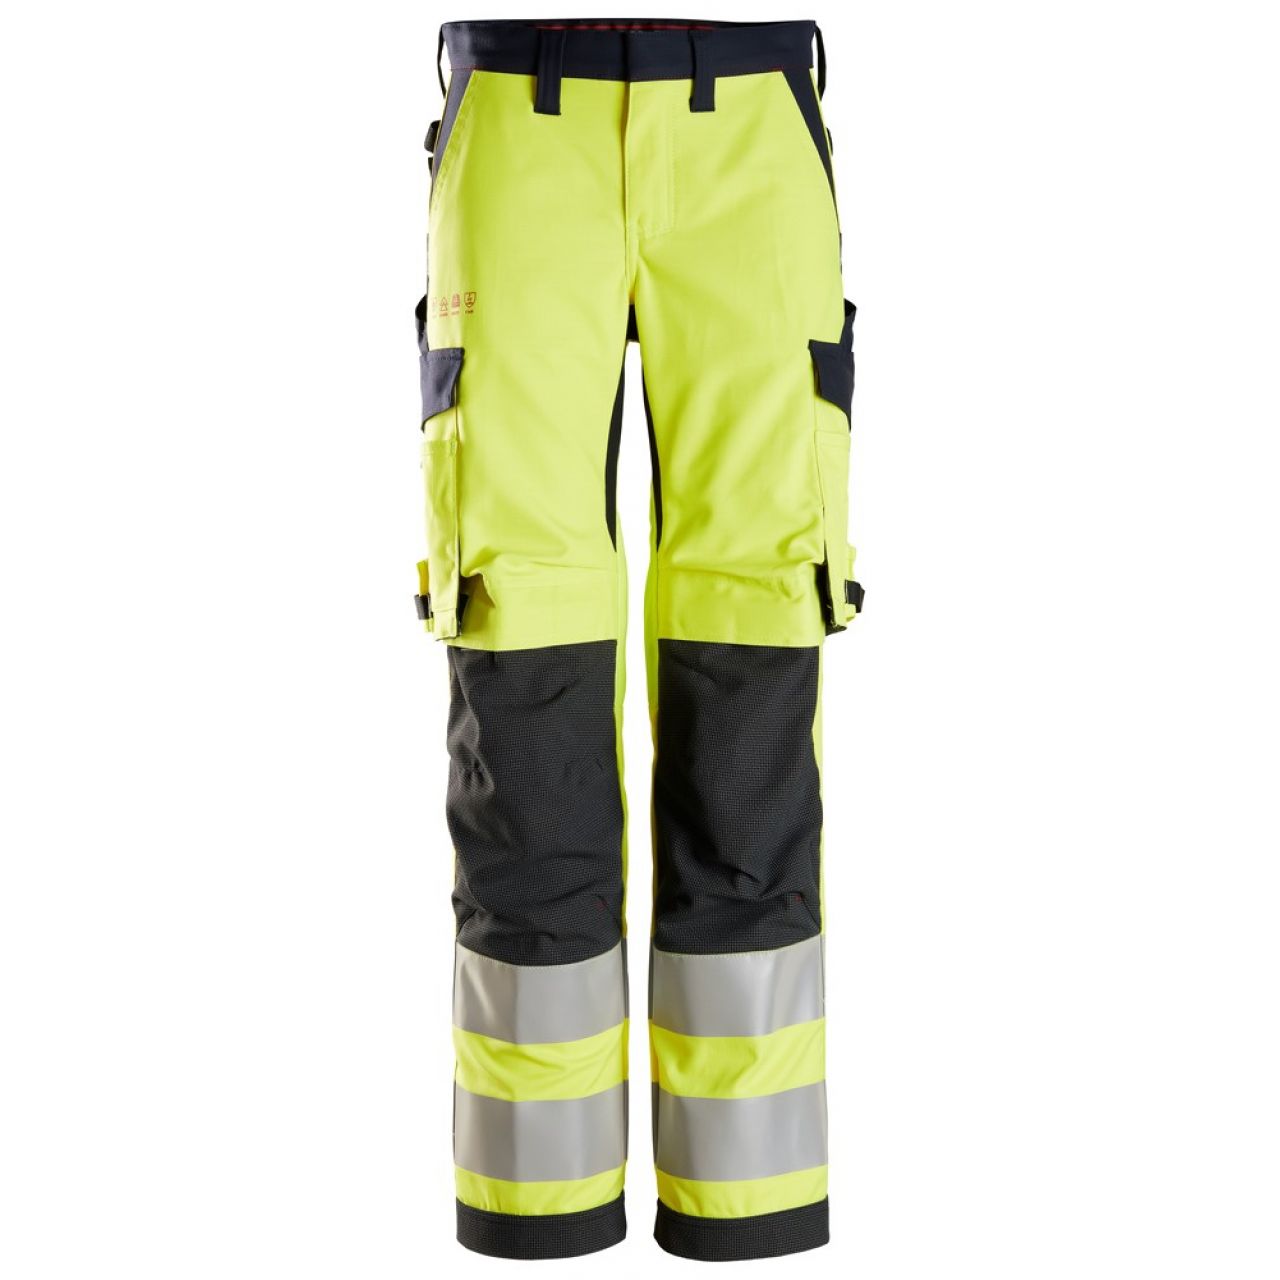 6760 Pantalones largos de trabajo de alta visibilidad clase 2 para mujer ProtecWork amarillo-azul marino talla 54